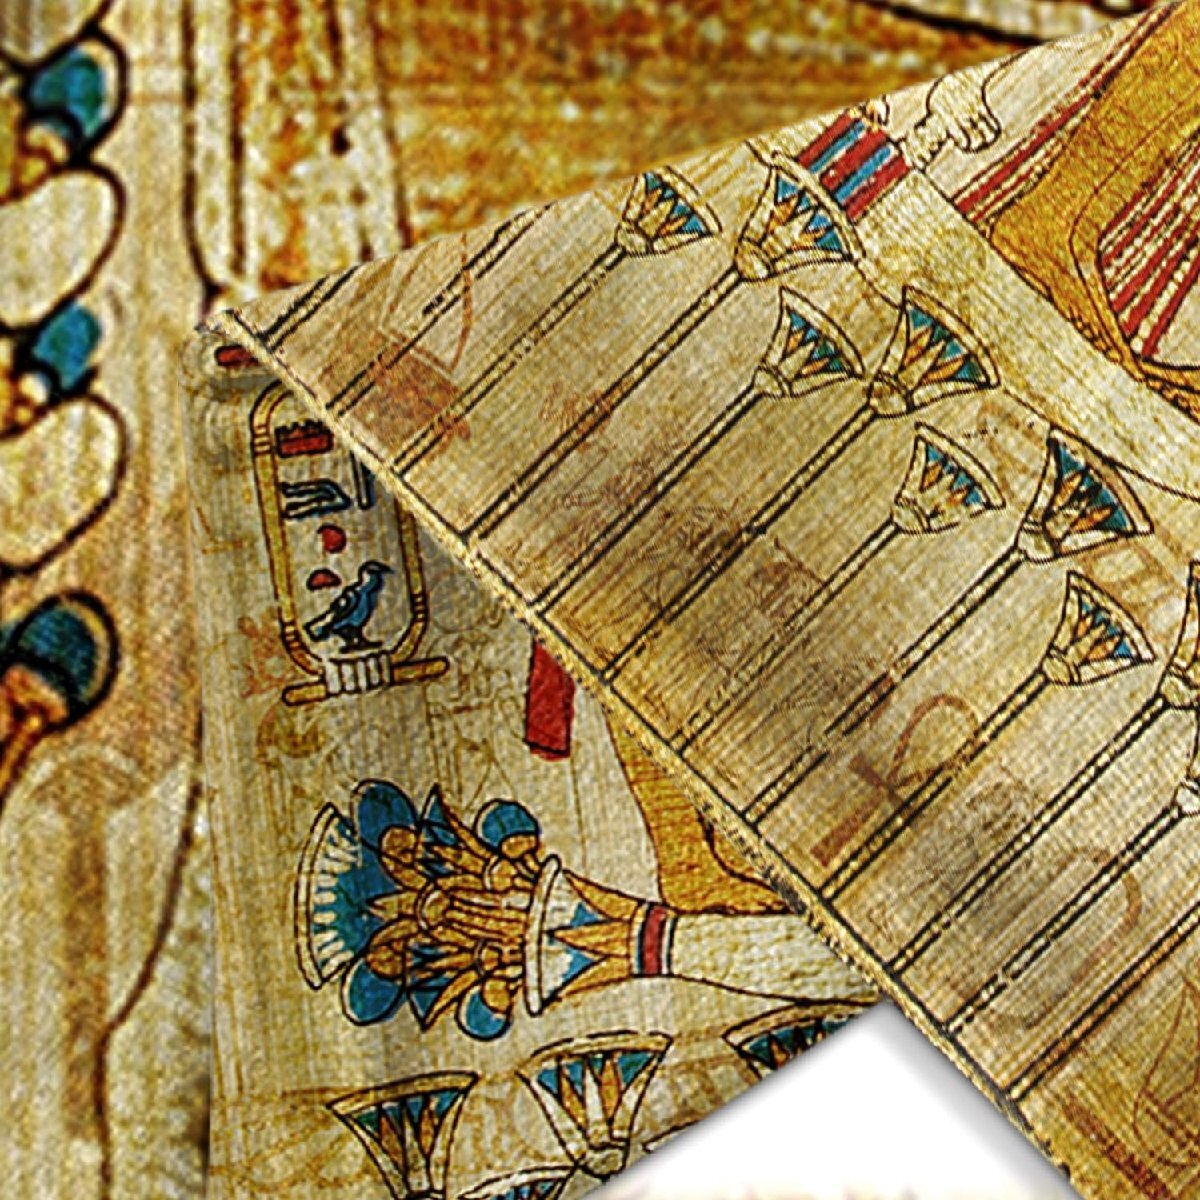  старый плата ejipto рисунок наволочка 2 шт. комплект papirus старый плата картина длина 45.7cm× ширина 45.7cm оборудование орнамент подушка покрытие импортные товары 